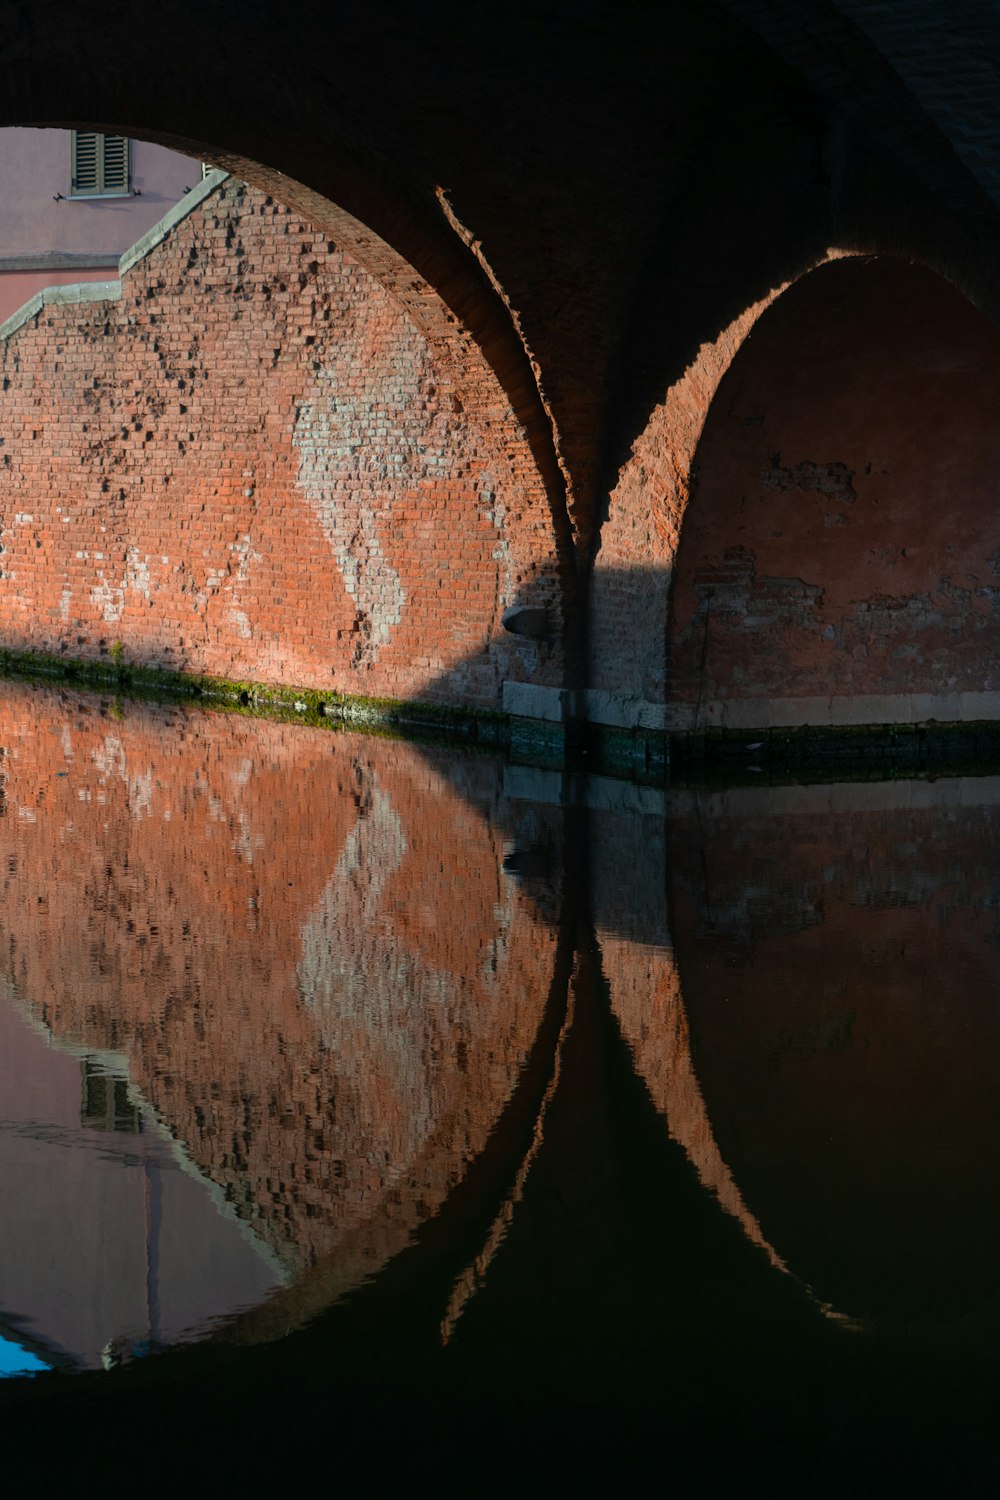 Reflexion der braunen Betonbrücke auf dem Wasser tagsüber